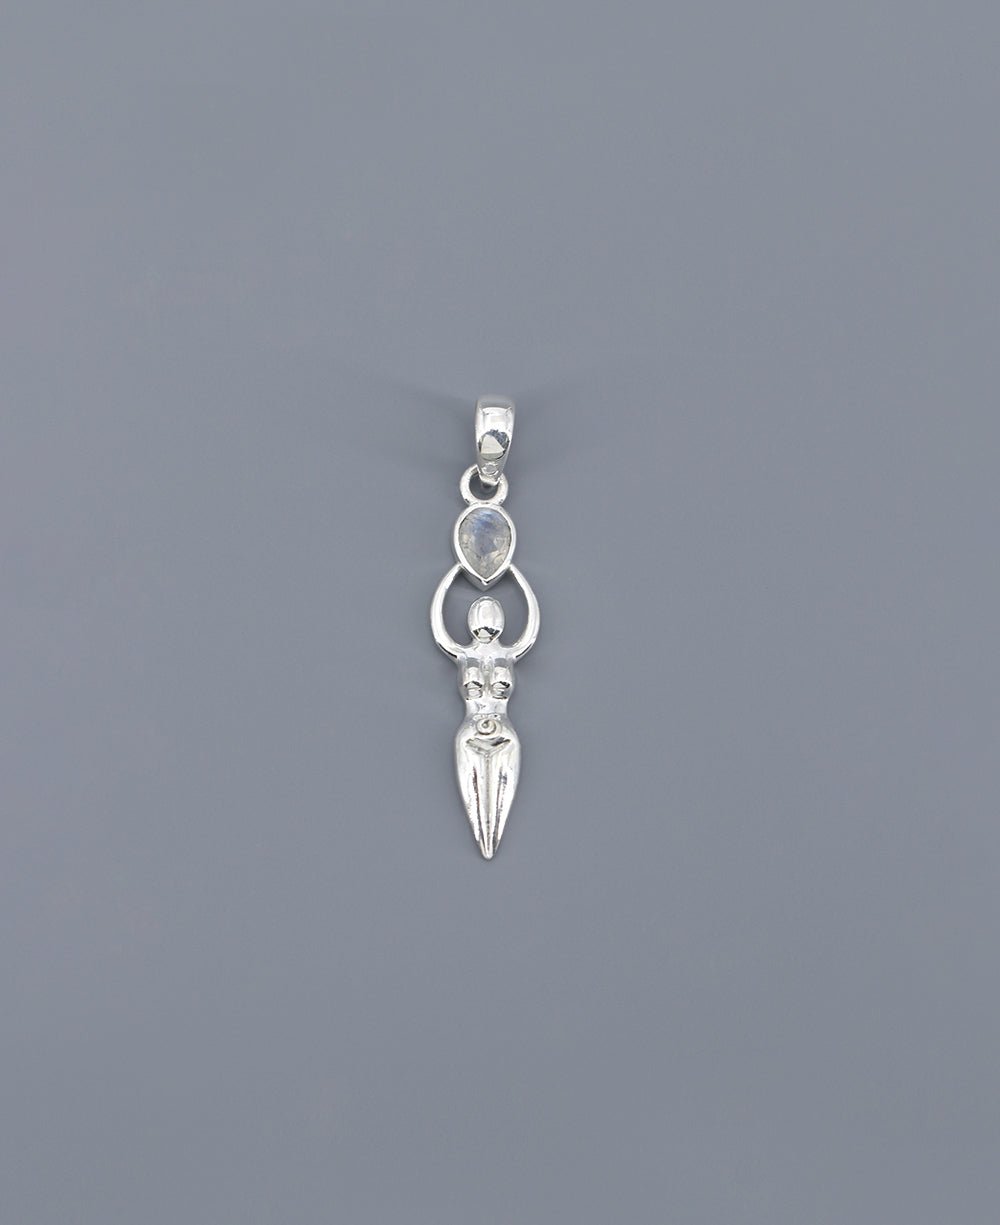 Sacred Feminine Goddess Pendant in Sterling Silver With Moonstone - Pendants